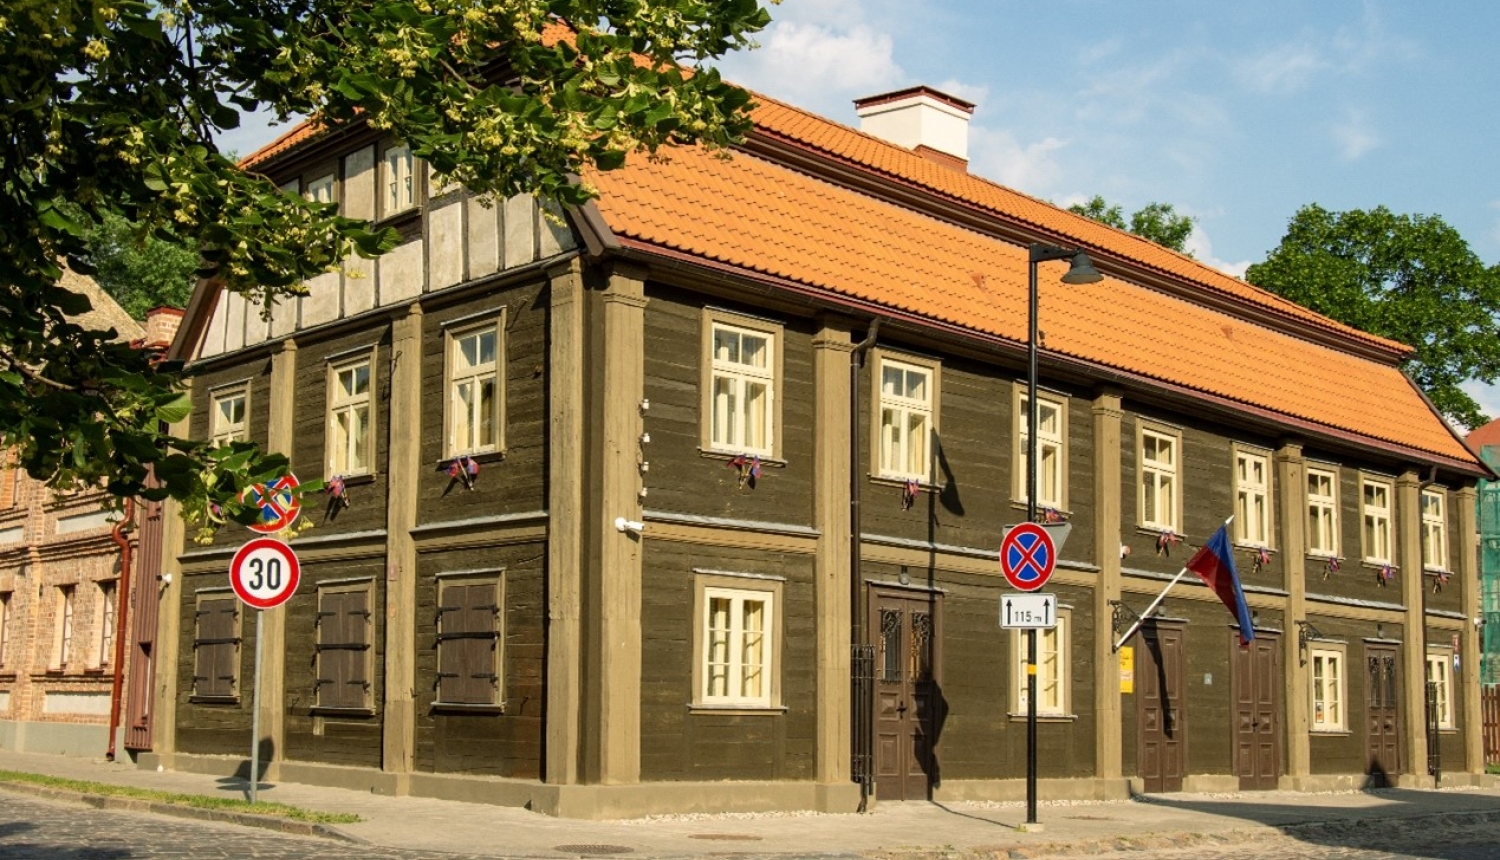 Jelgavas vecpilsētas māja